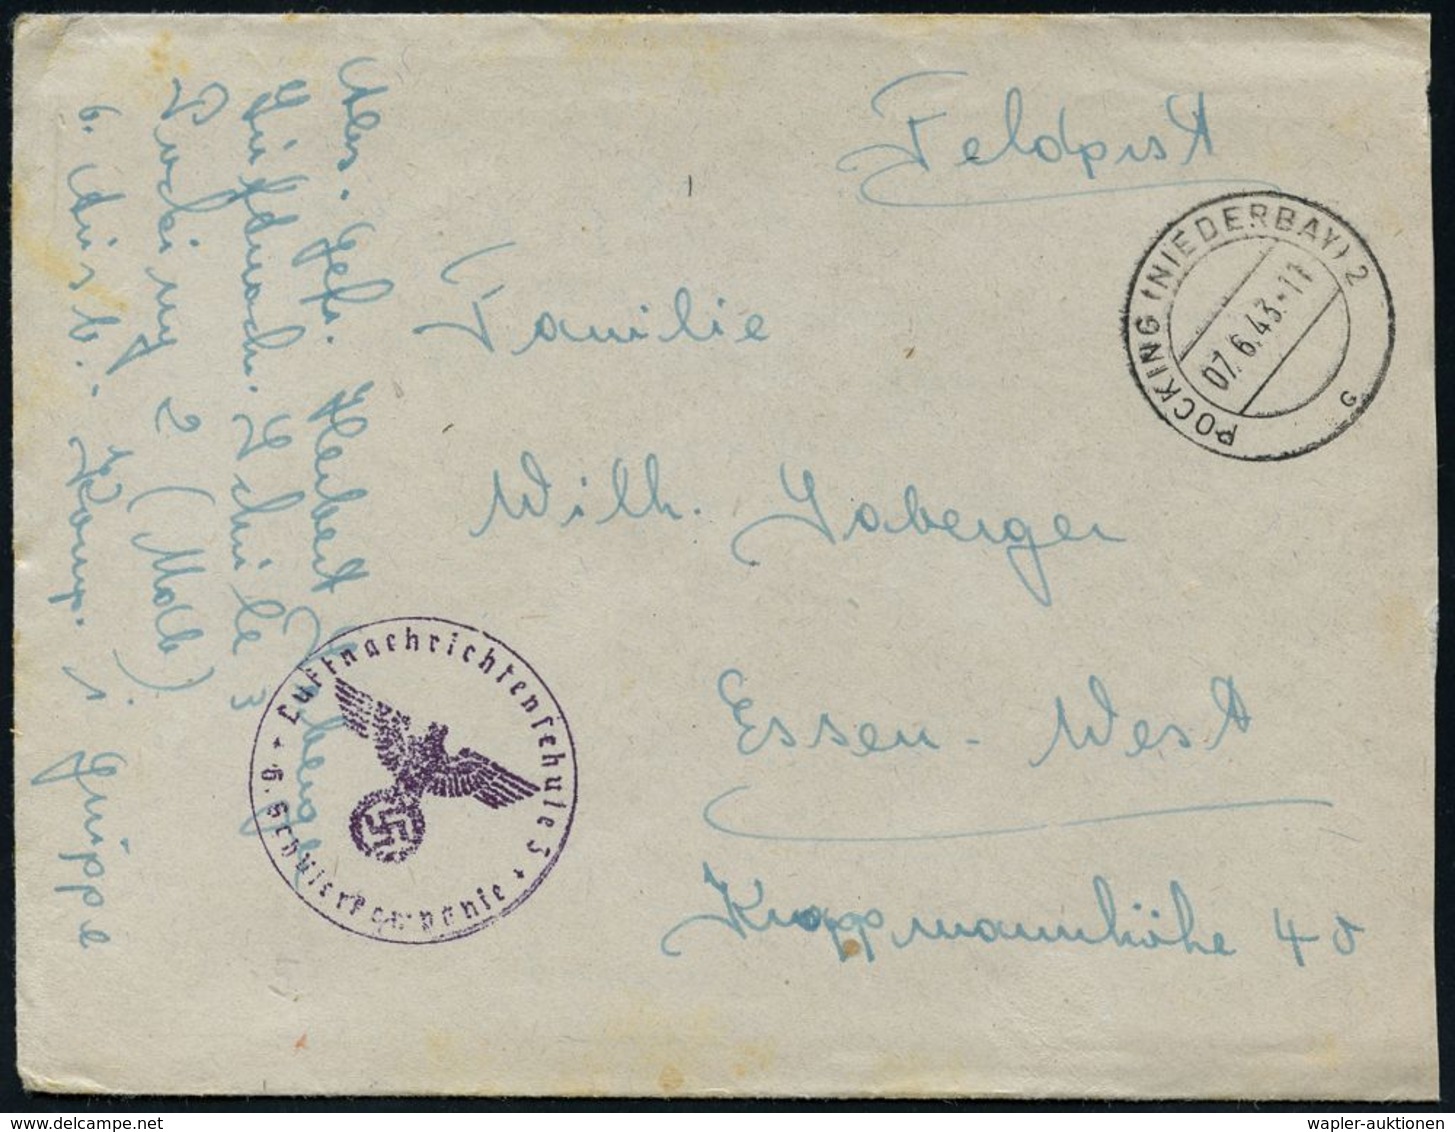 LUFTWAFFEN-FLUGSCHULEN & AKADEMIEN : POCKING (NIEDERBAY) 2/ C #bzw.# B 1941/43 3 Verschiedene Briefstempel Der Luftnachr - Avions